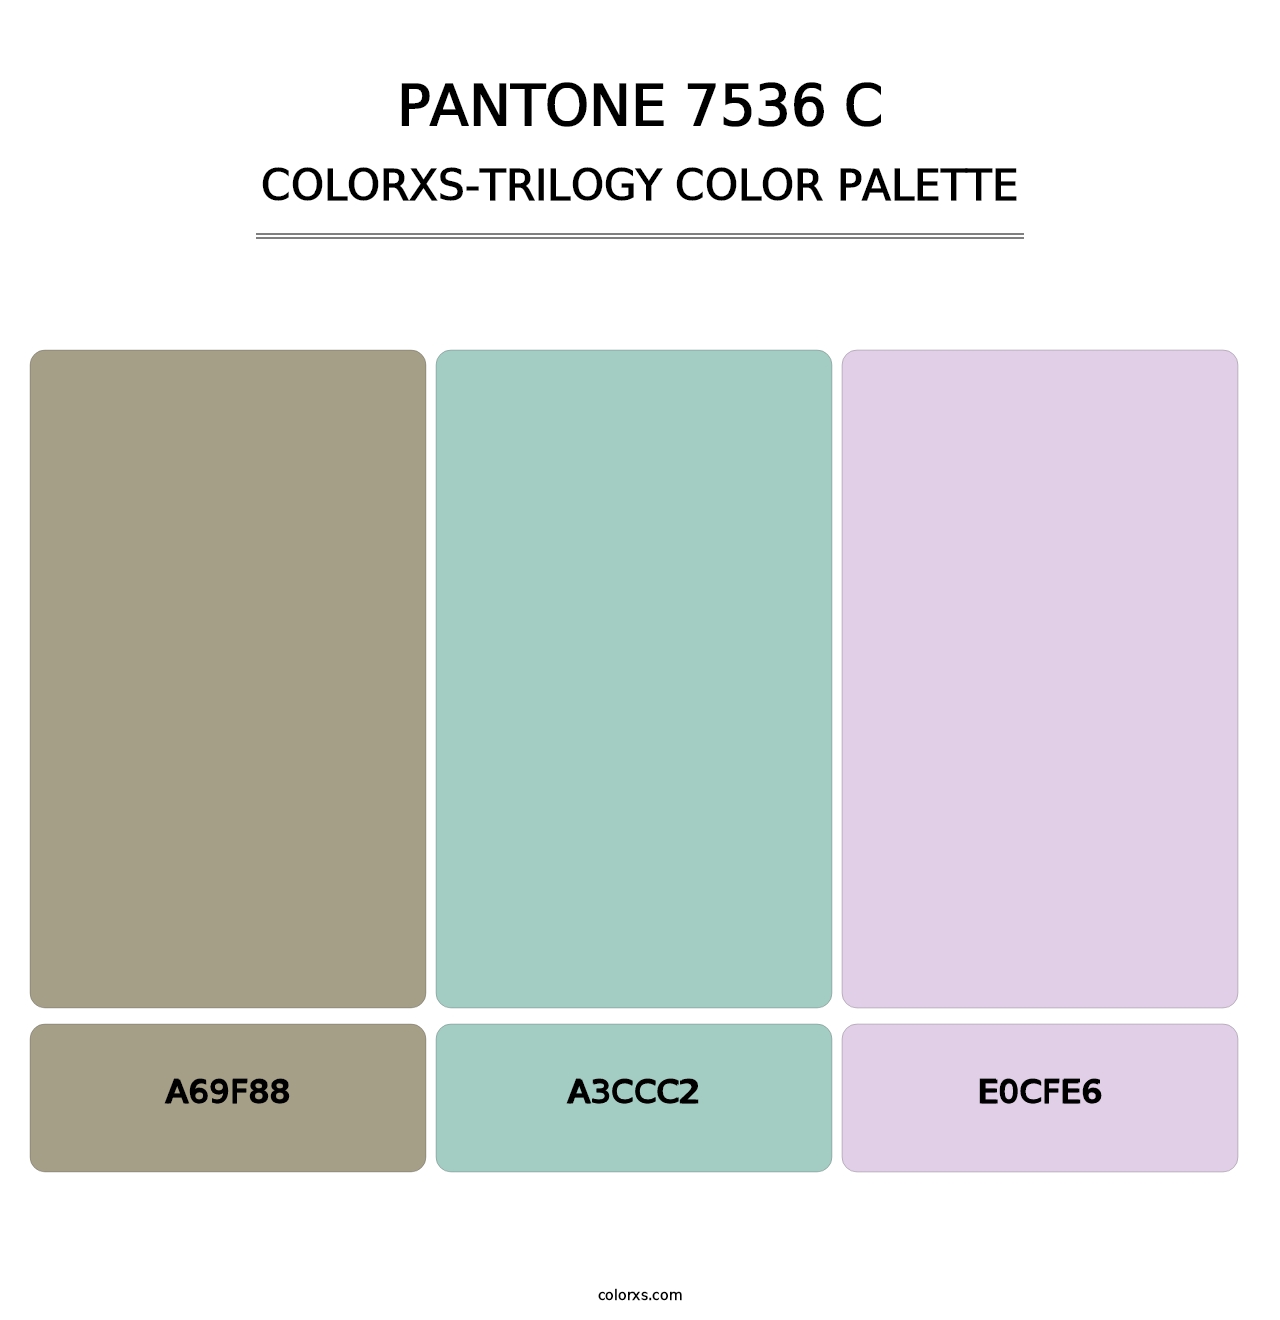 PANTONE 7536 C - Colorxs Trilogy Palette